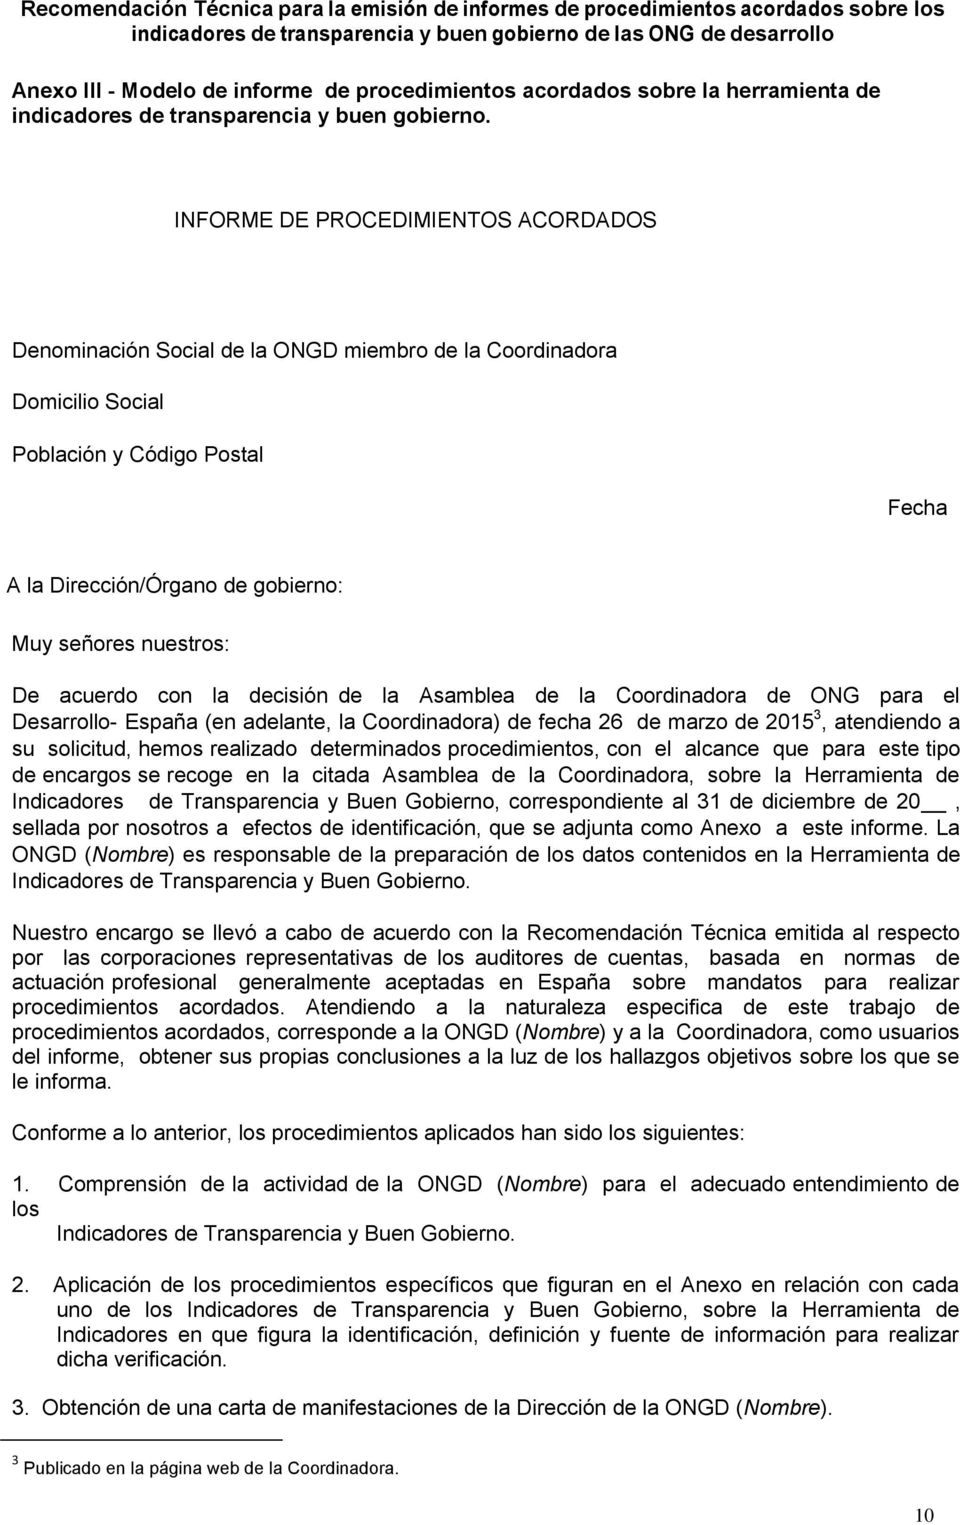 De acuerdo con la decisión de la Asamblea de la Coordinadora de ONG para el Desarrollo- España (en adelante, la Coordinadora) de fecha 26 de marzo de 2015 3, atendiendo a su solicitud, hemos